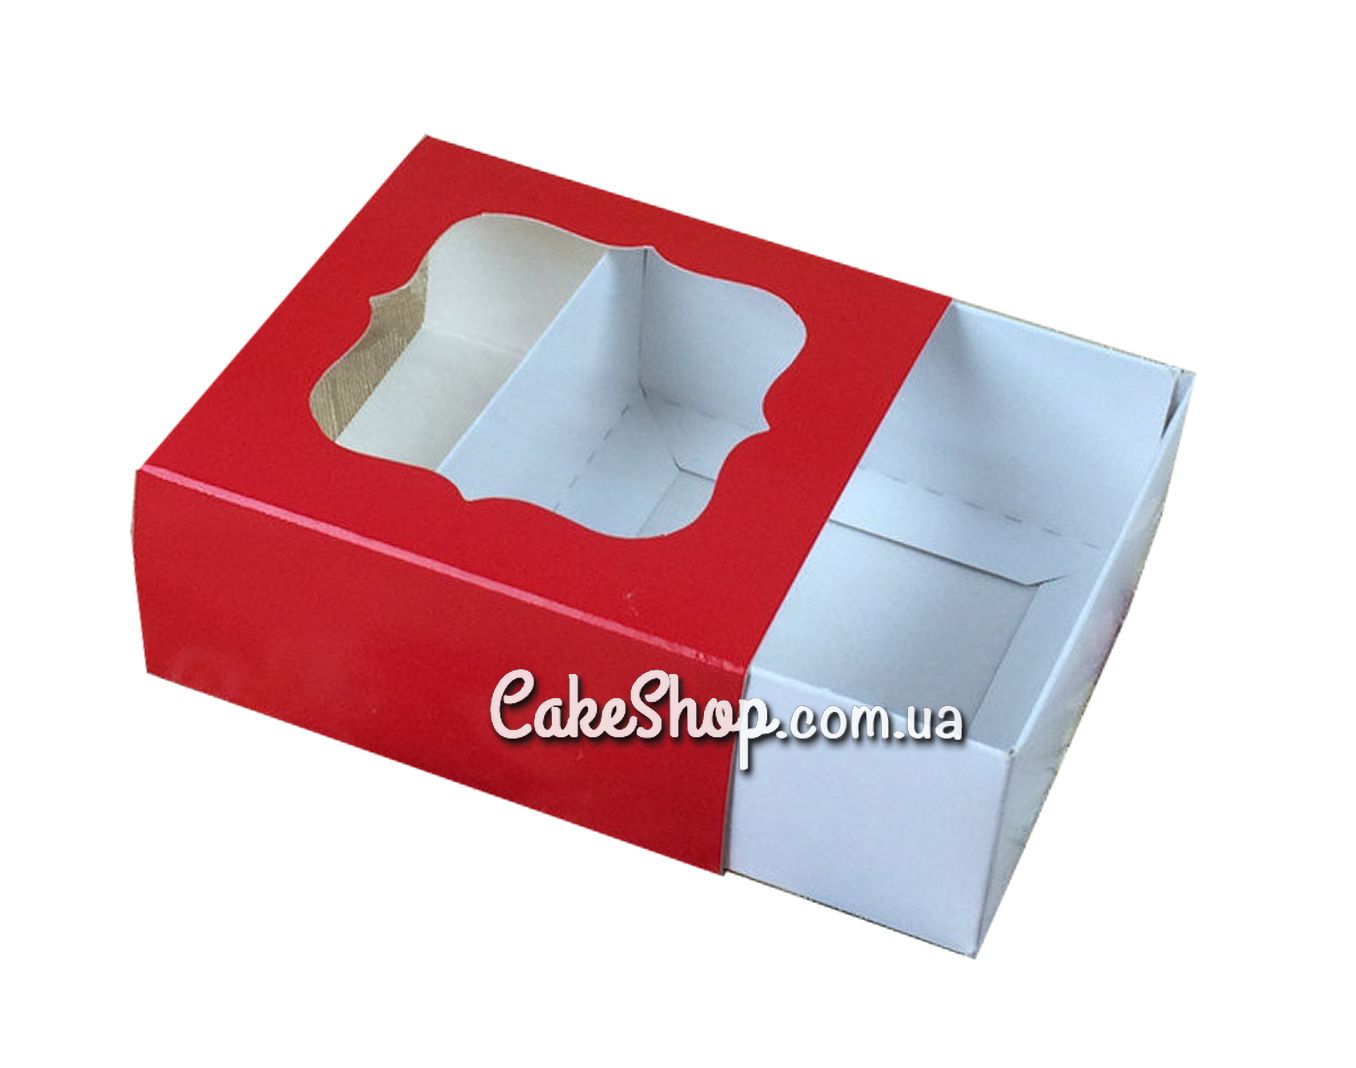 ⋗ Коробка для конфет, изделий Hand Made, мыла ручной работы Красная, 8х8х3,5 см купить в Украине ➛ CakeShop.com.ua, фото